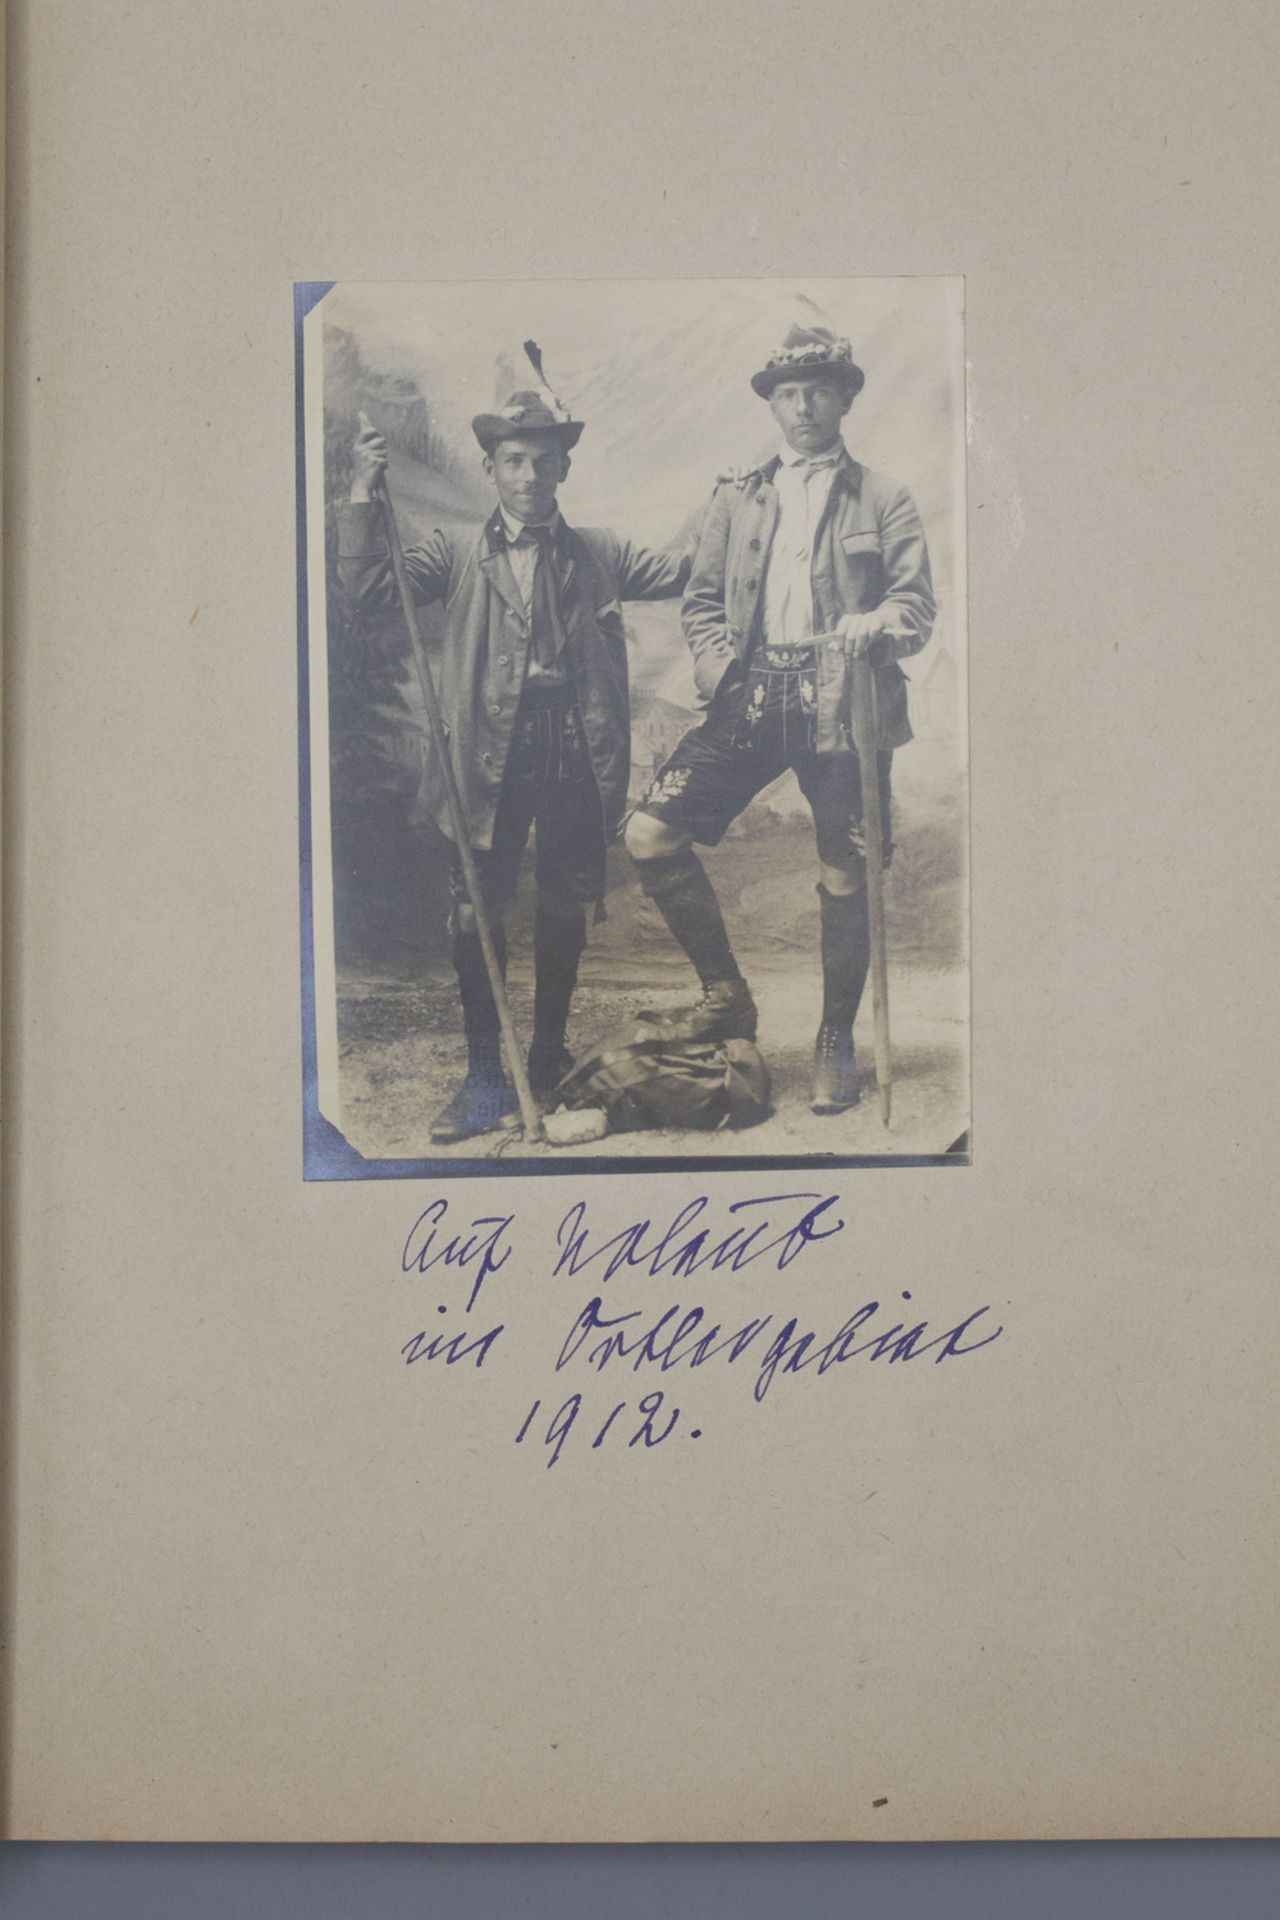 Biographie / A biography des Joachim Diederich Kramsta, 1. Wachoffizier auf U66, 1917/18 - Bild 5 aus 7